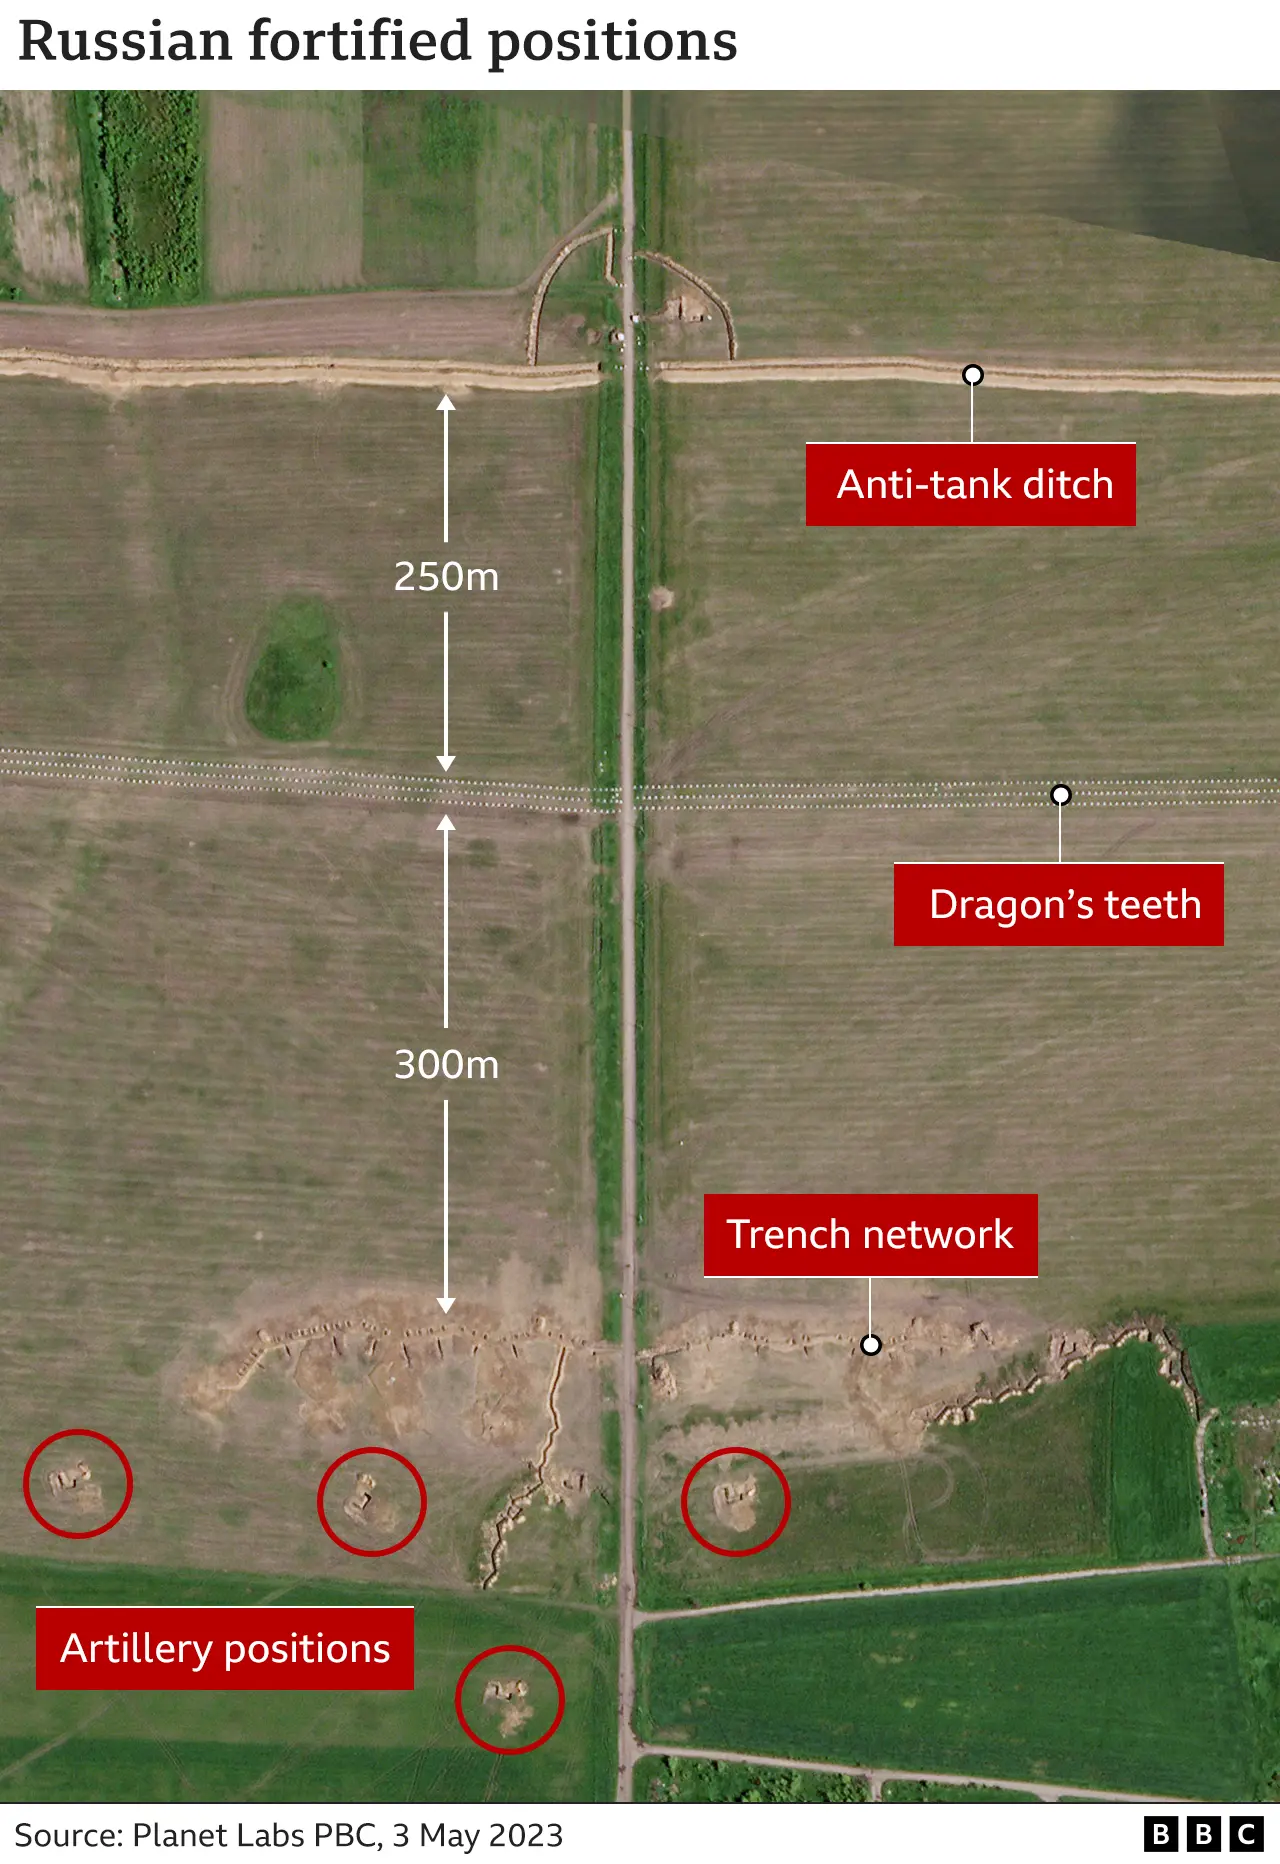 Спутниковый снимок: противотанковый ров, за которым следует ряд «зубов дракона». В 250 метрах и дальше сеть траншей в 300 метрах. За траншеями обозначены артиллерийские позиции.